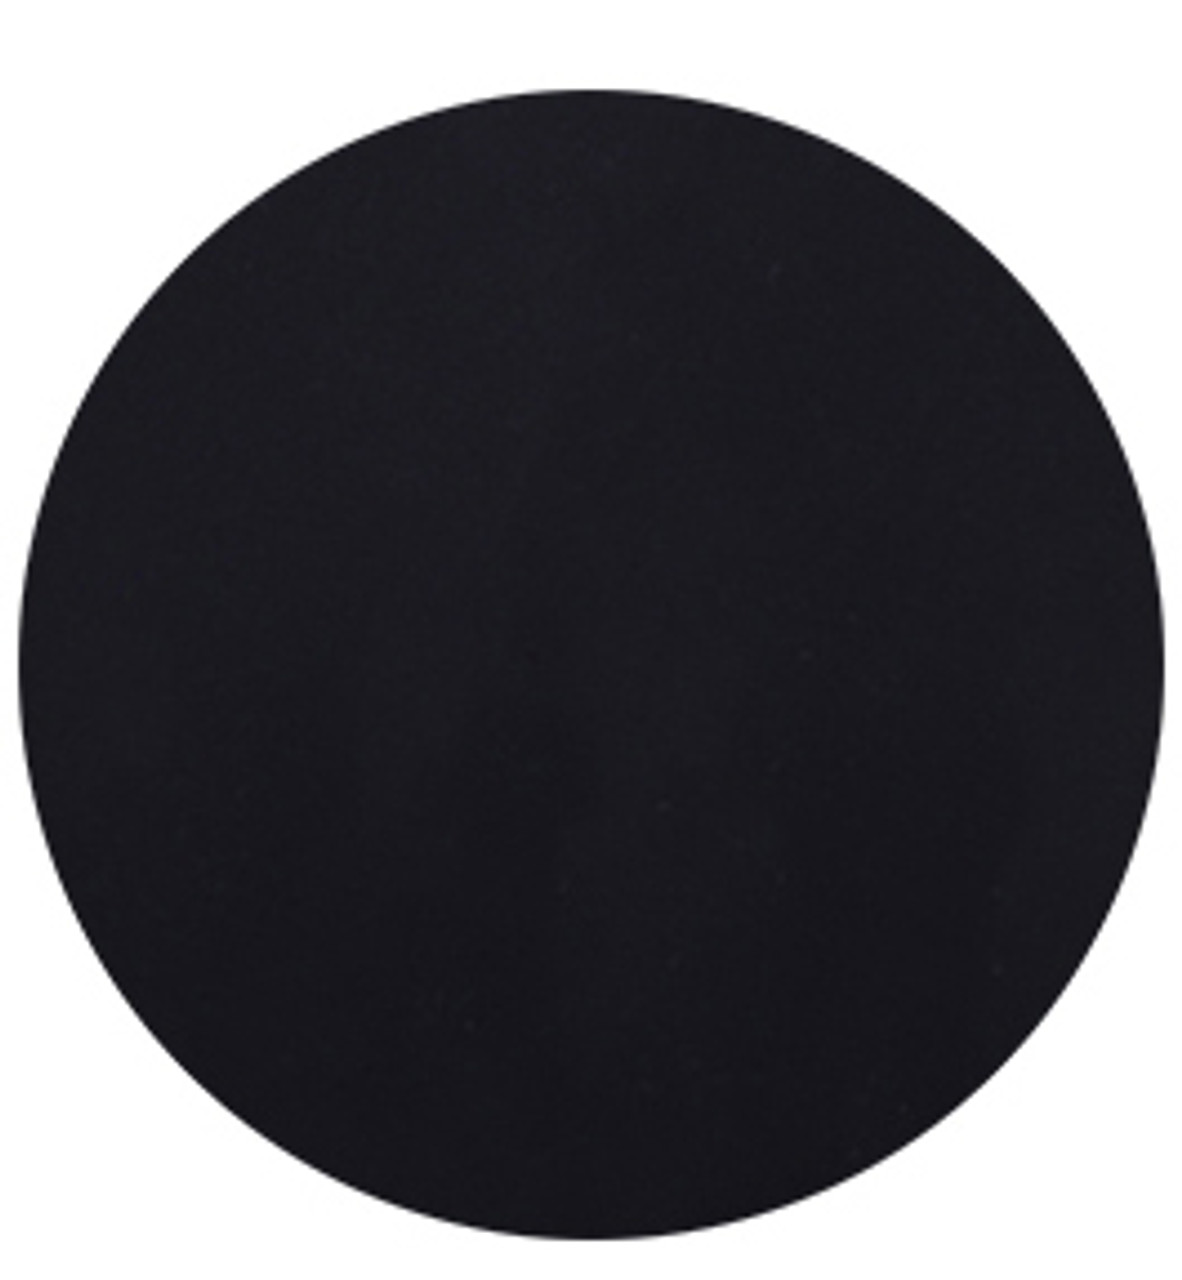 Black Circular Silicone Mat for Nail Art. Available at  .